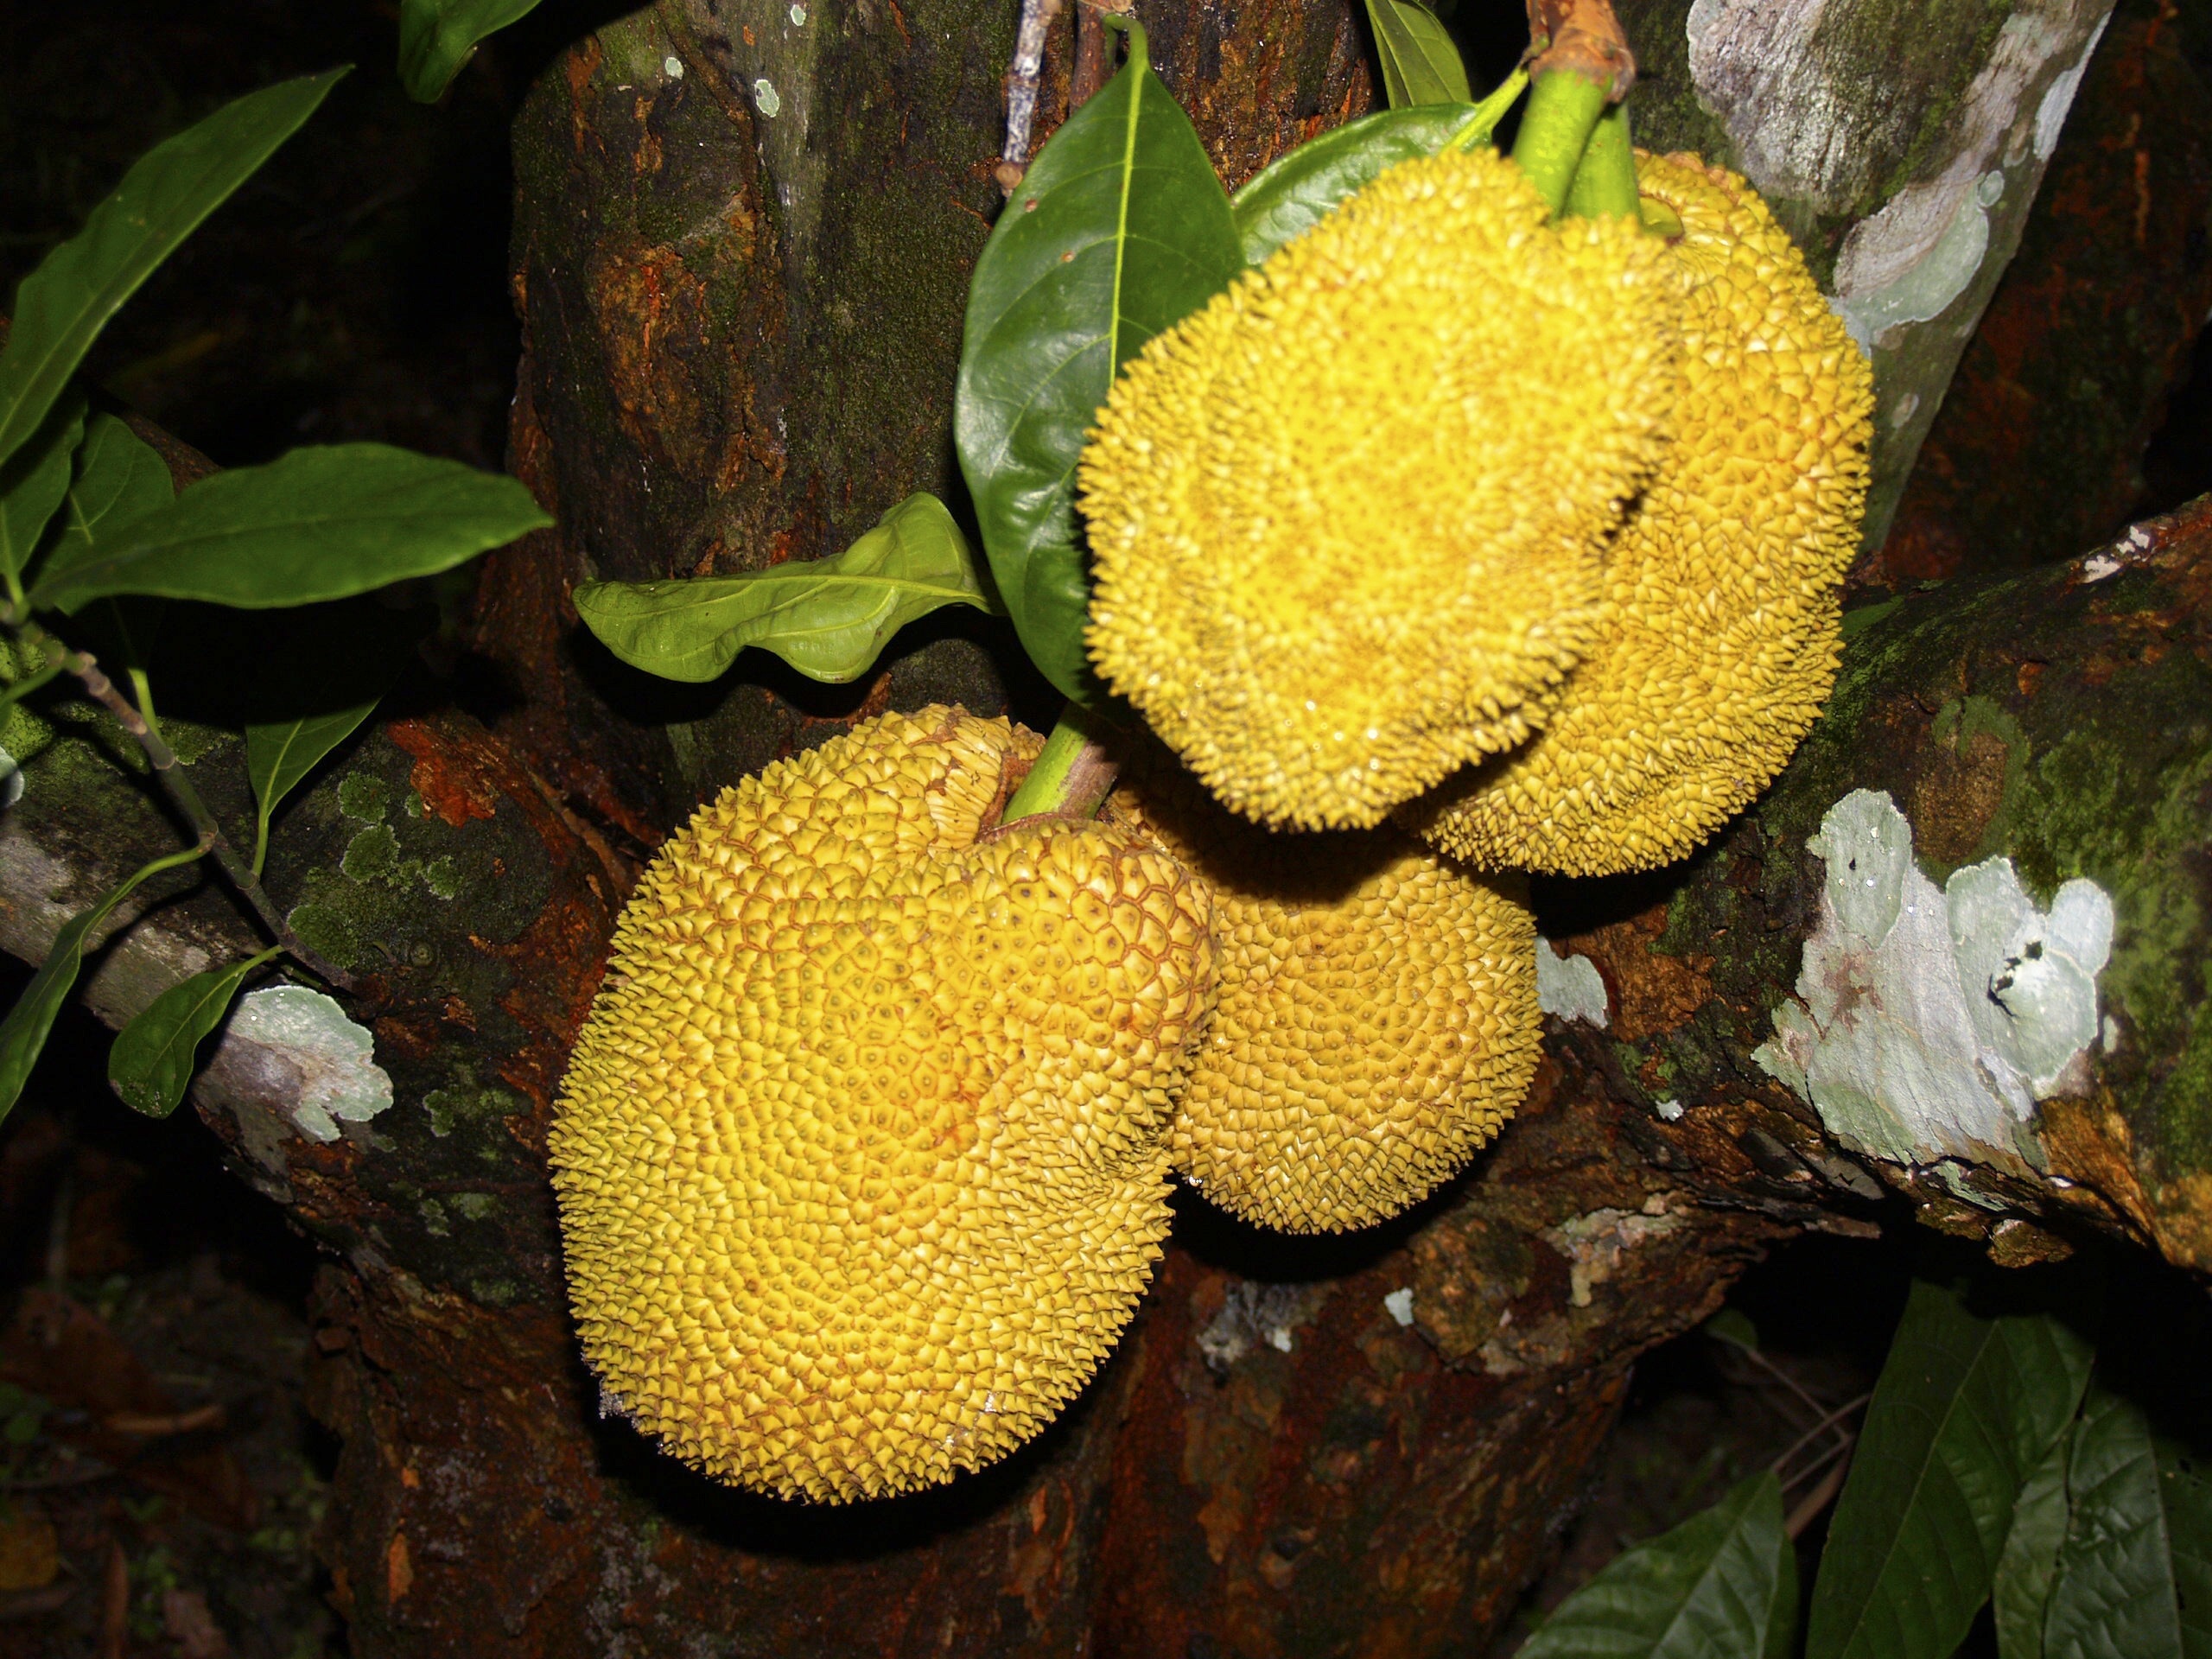 yellow jackfruit